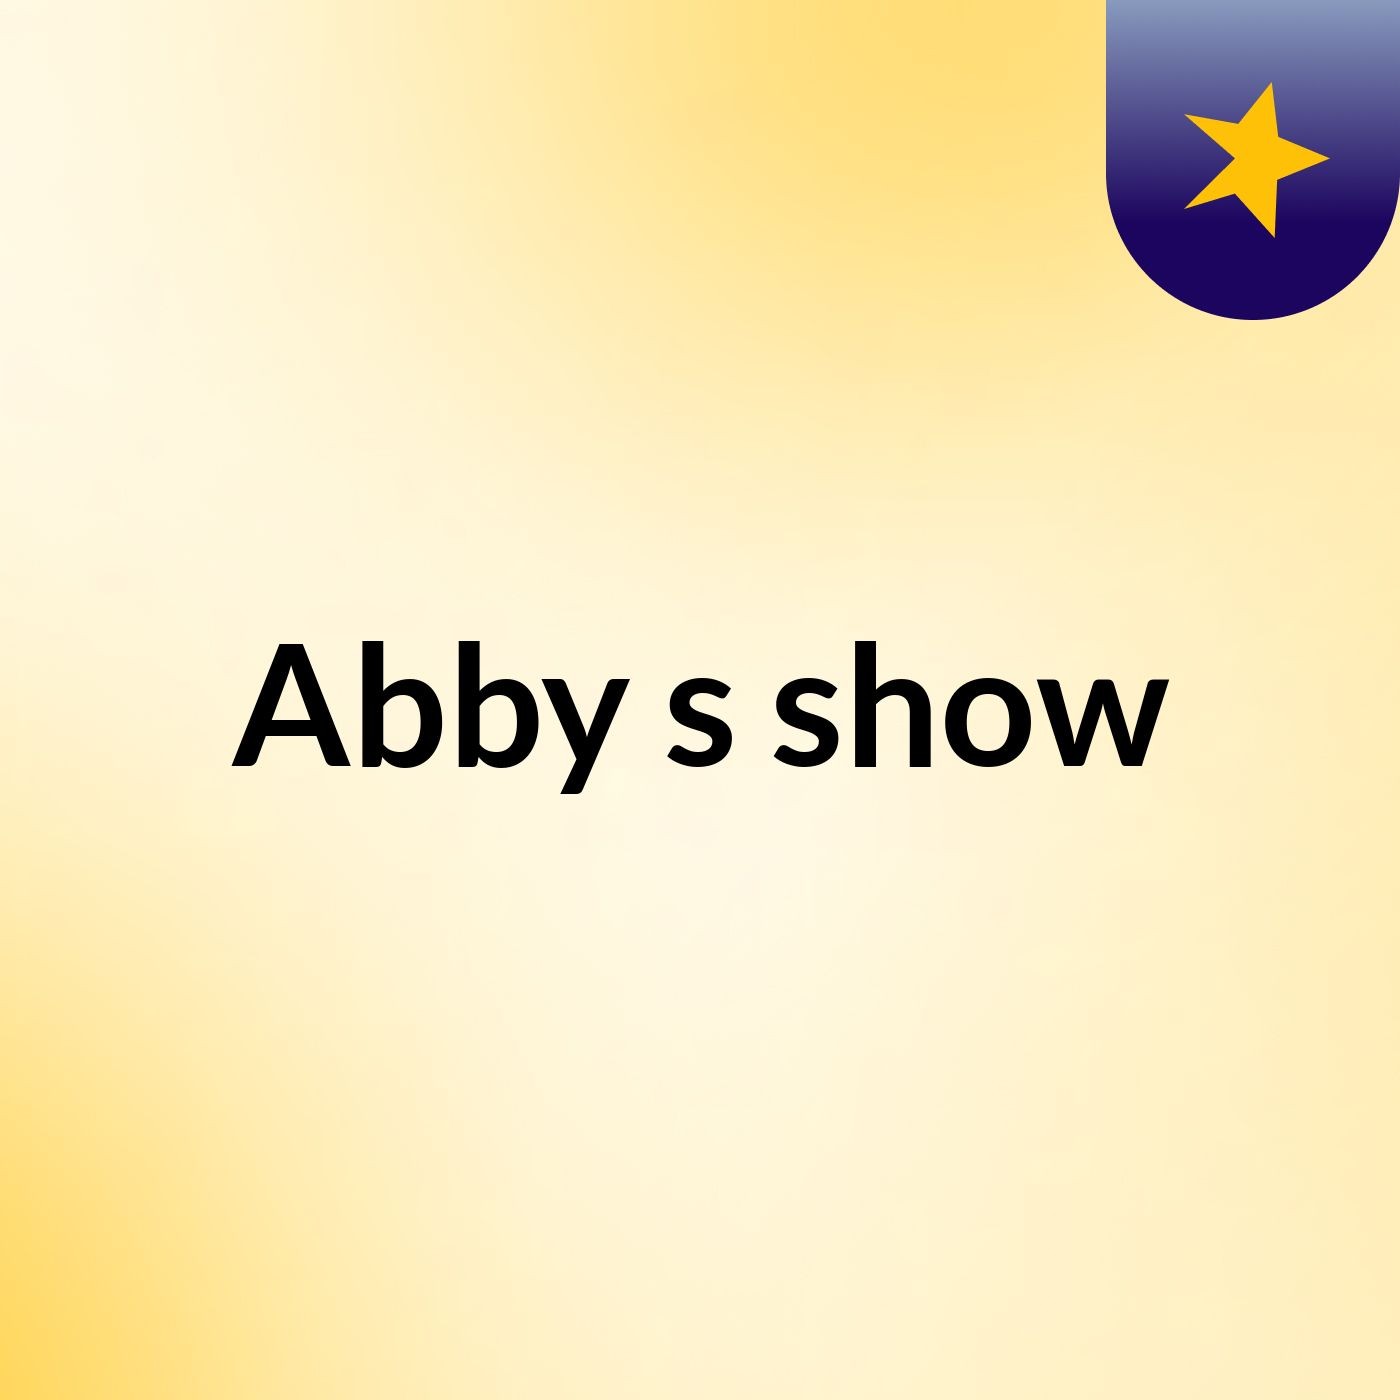 Abby's show